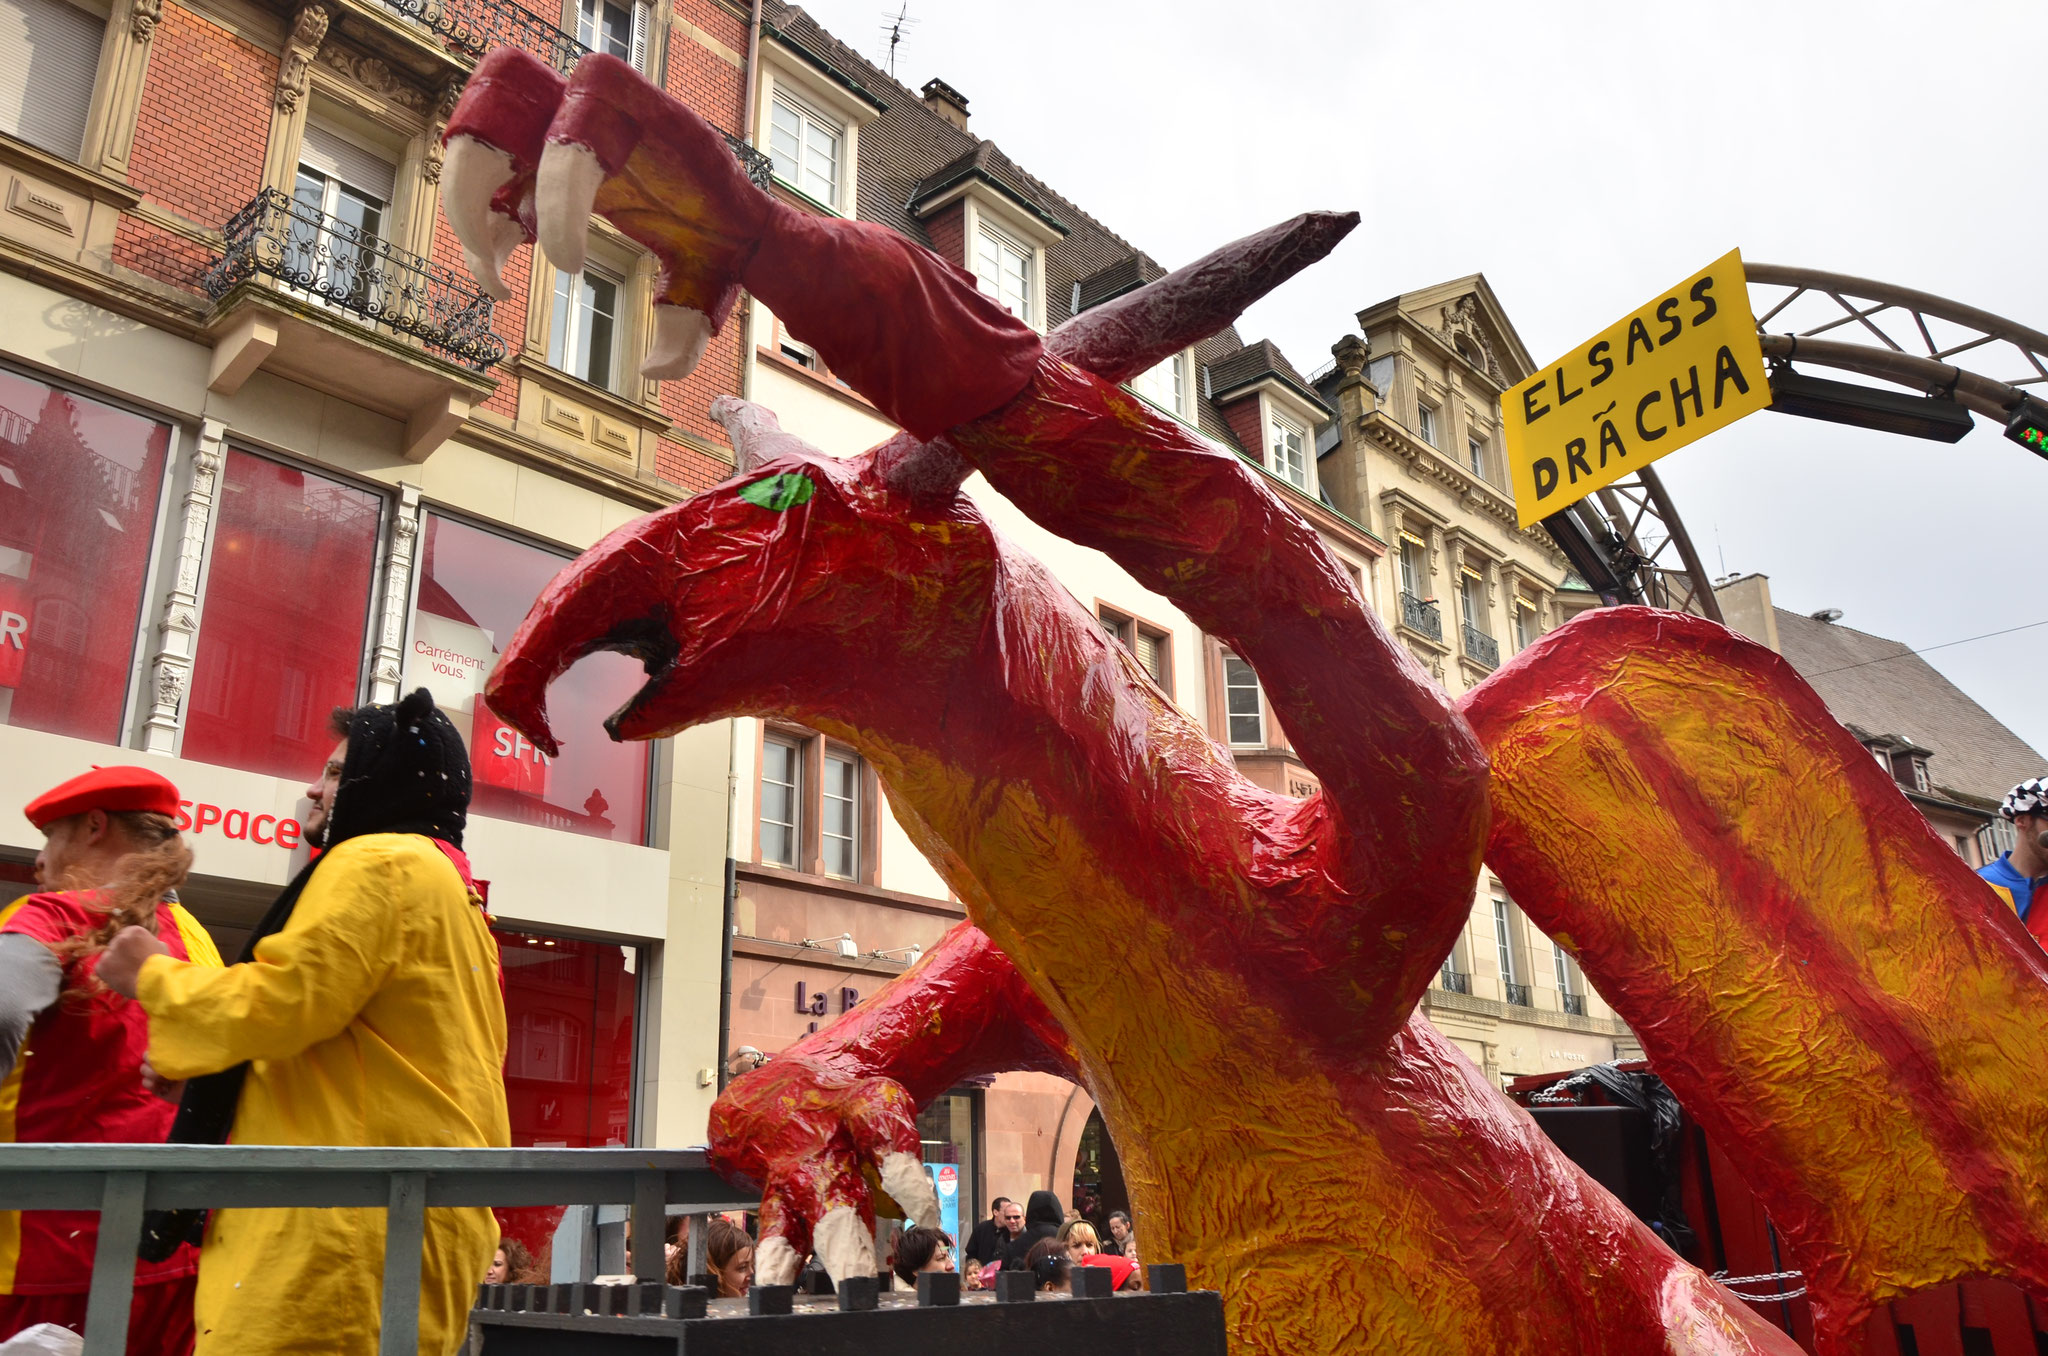 Char de Dreams Creator : Fantastik : dragon d'Alsace